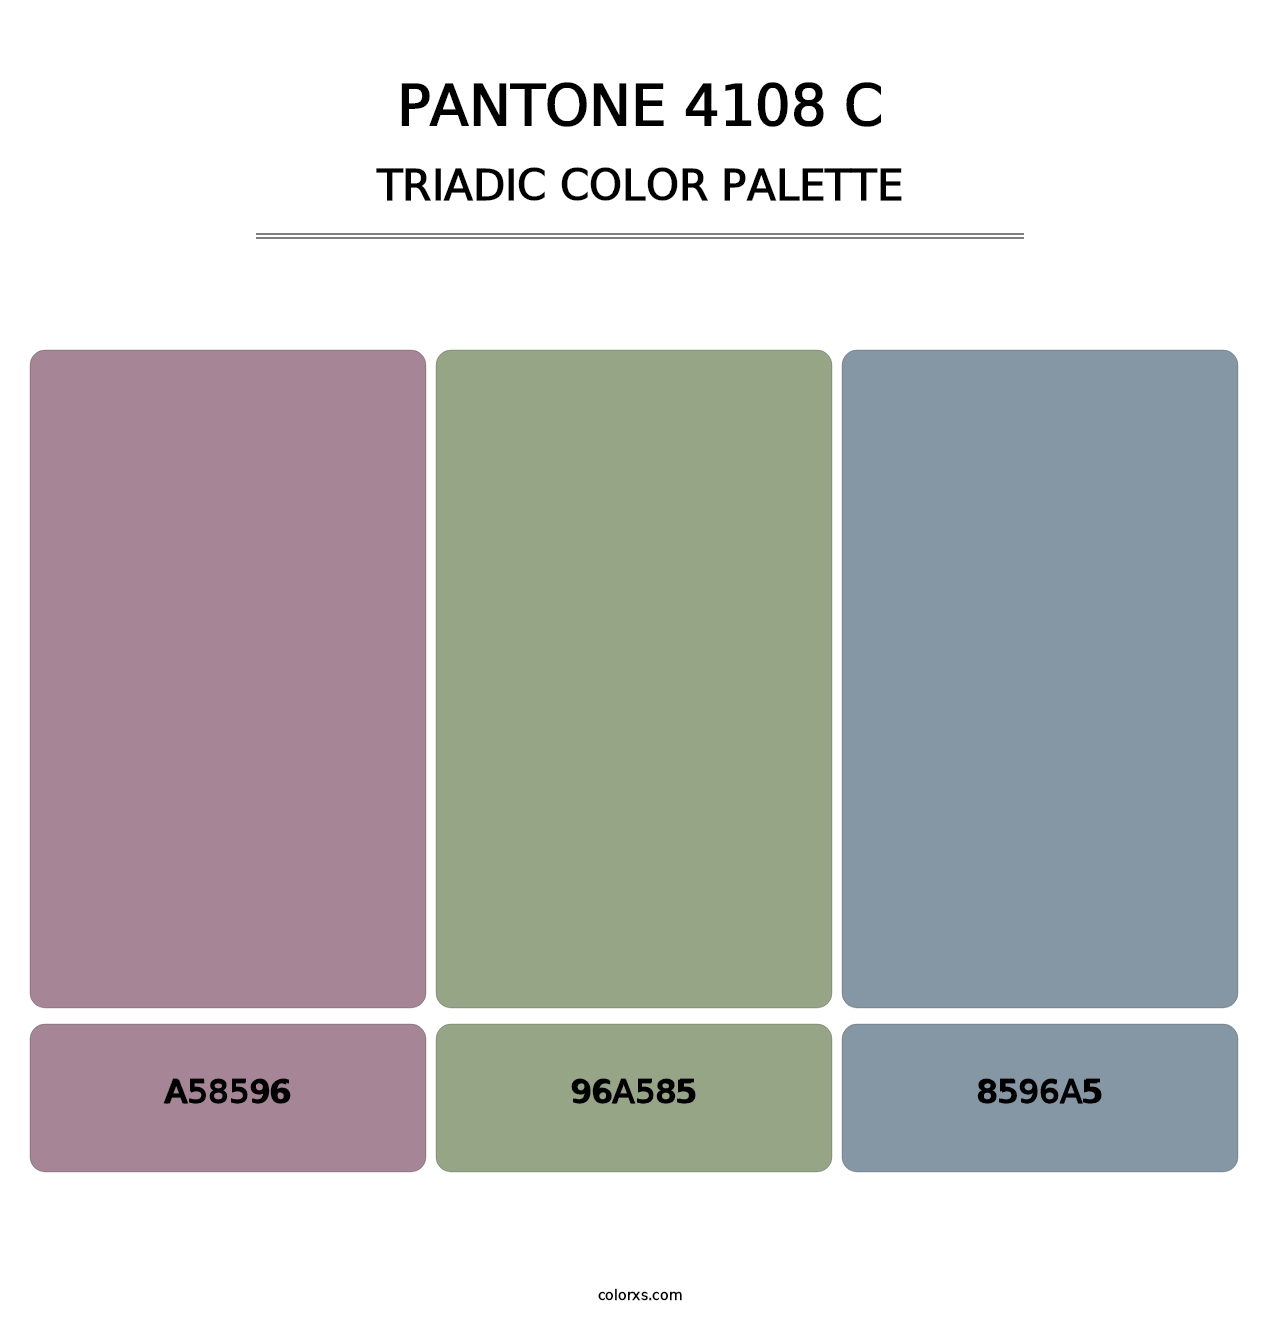 PANTONE 4108 C - Triadic Color Palette